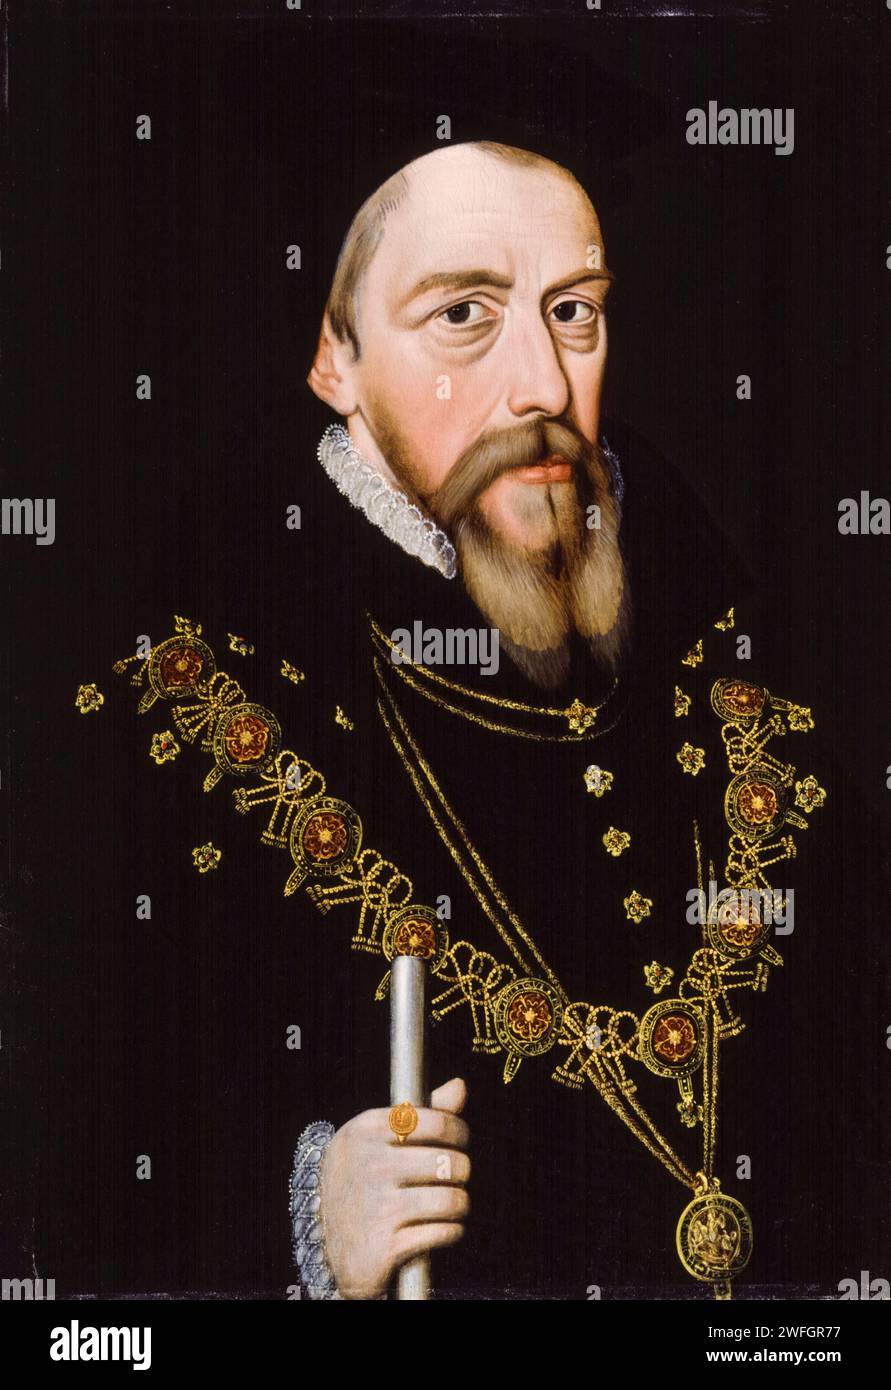 William Cecil, i barone Burghley, Lord Burghley (1520-1598), statista inglese. Consigliere capo della regina Elisabetta i, ritrattista ad olio su tavola, dopo il 1572 Foto Stock